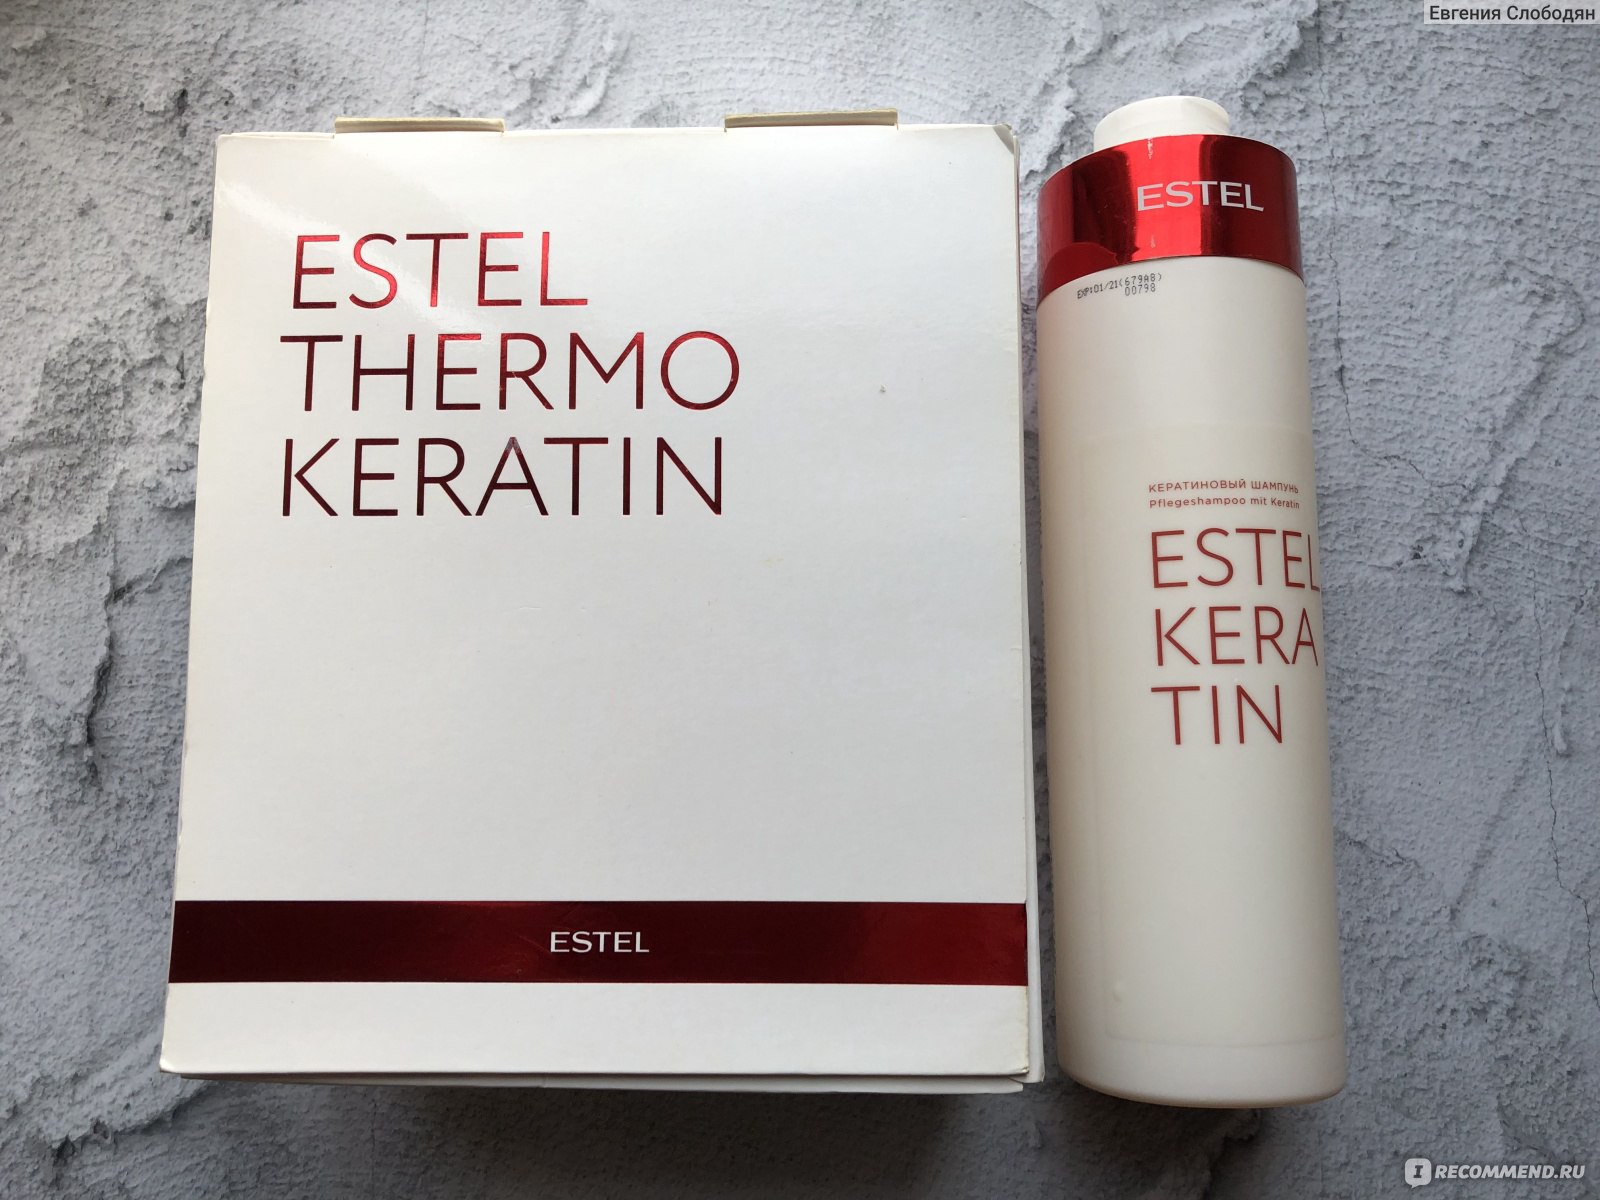 Эстель термокератин набор. Набор Estel Keratin (шампунь 250 мл + маска 200 мл). Набор Estel Keratin (ш 250 + м 250). Набор Estel Keratin (шампунь 250 мл + маска 250 мл). Эстель кератин набор.